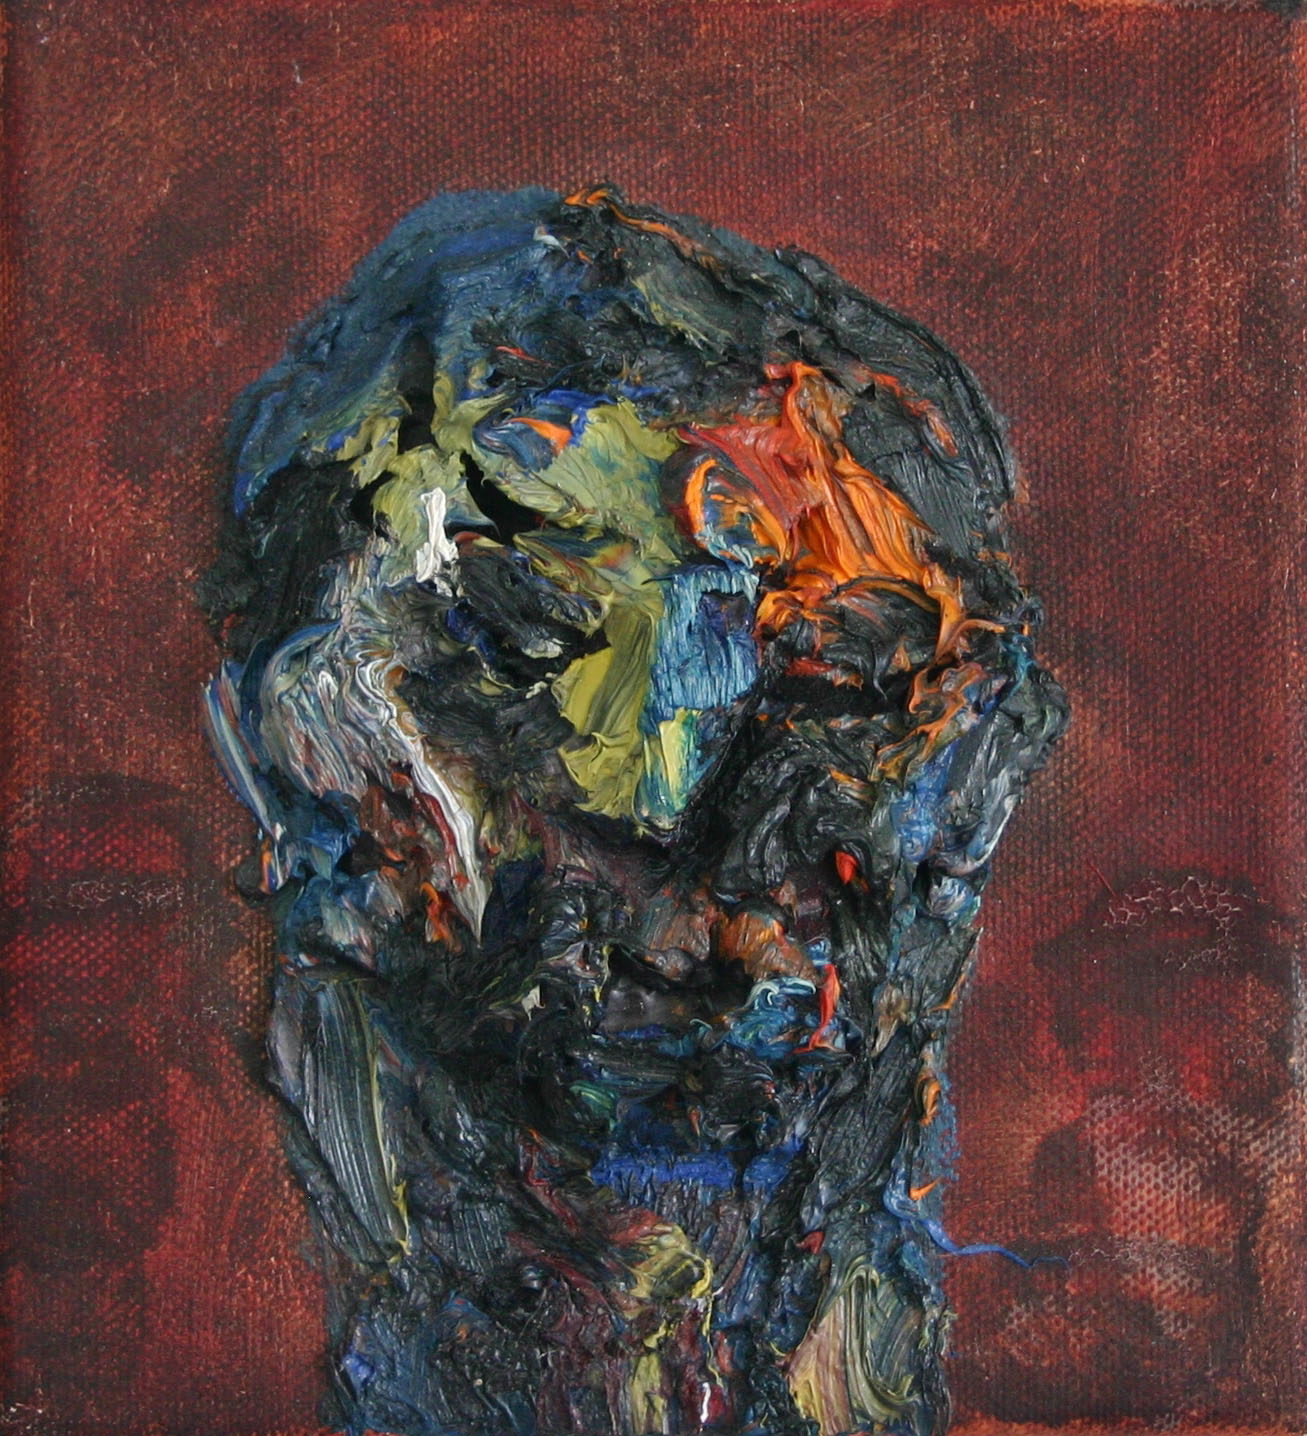 Harry Meyer, Kopf auf Leinwand, Öl auf Leinwand, 20 cm x 20 cm, Preis auf Anfrage, mey026kü